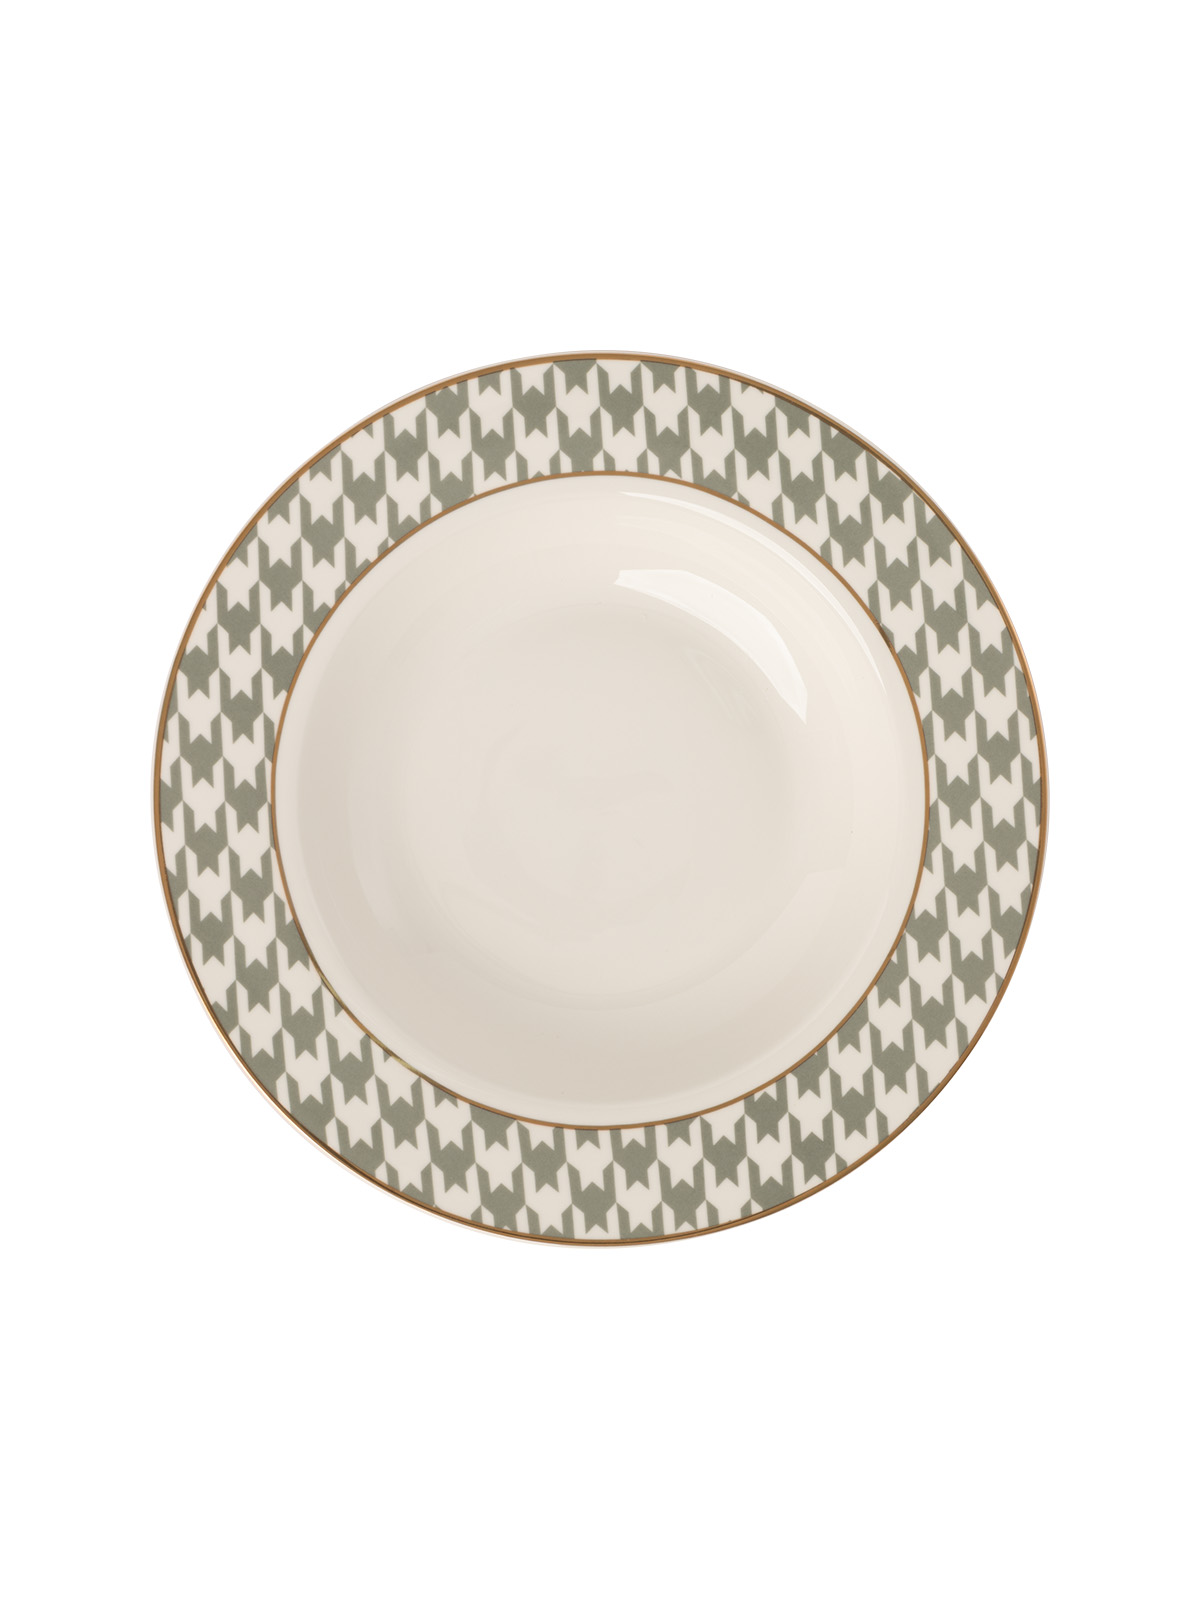 Тарелка DeNASTIA обеденная суповая «Пье-де-пуль» D21.5 см 280мл фарфор белый/мятный CE00464 - фото 4